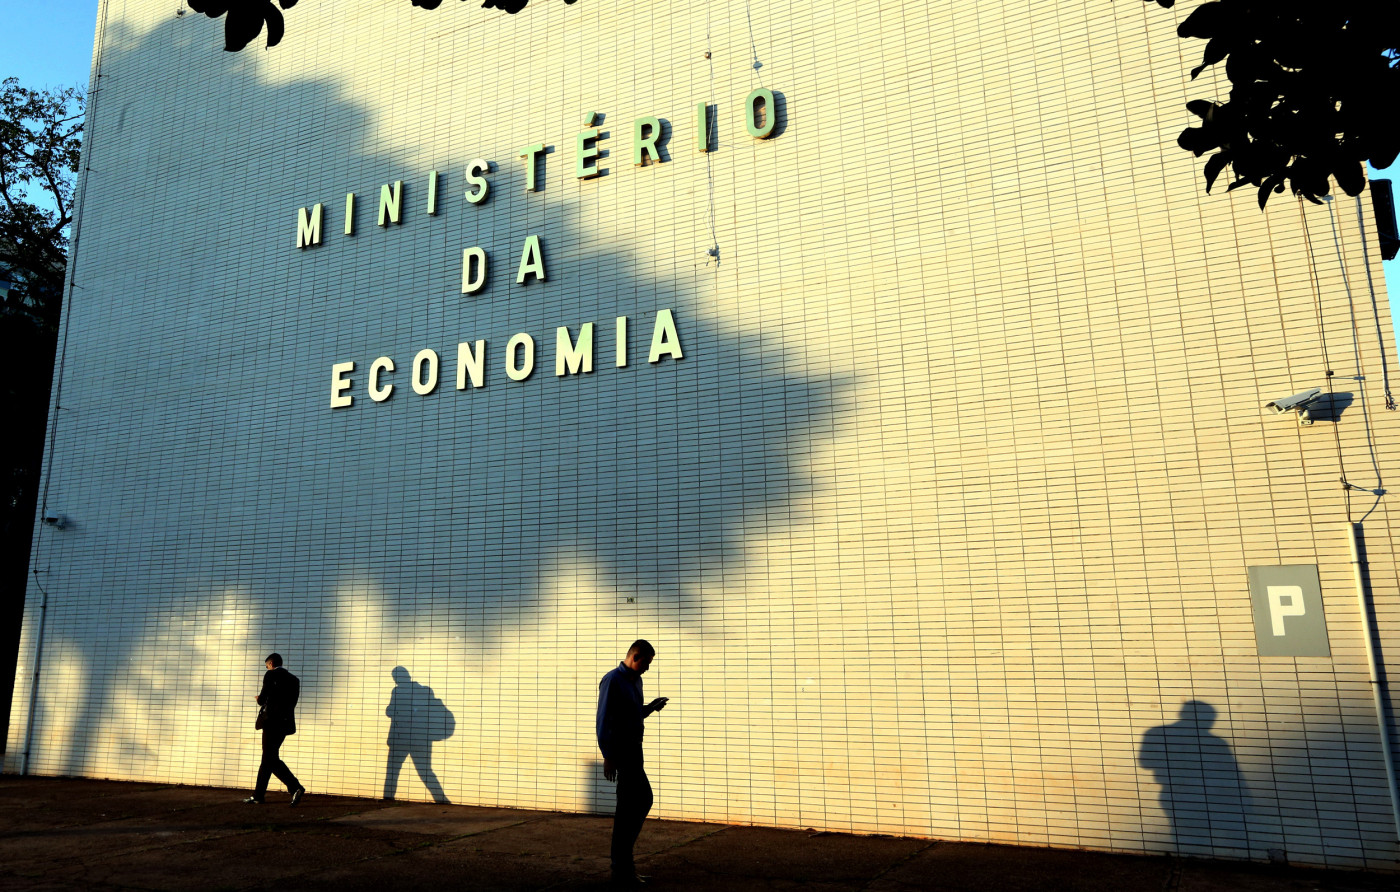 Ministério da Economia: Inscrições para vagas temporárias vão até 02/09